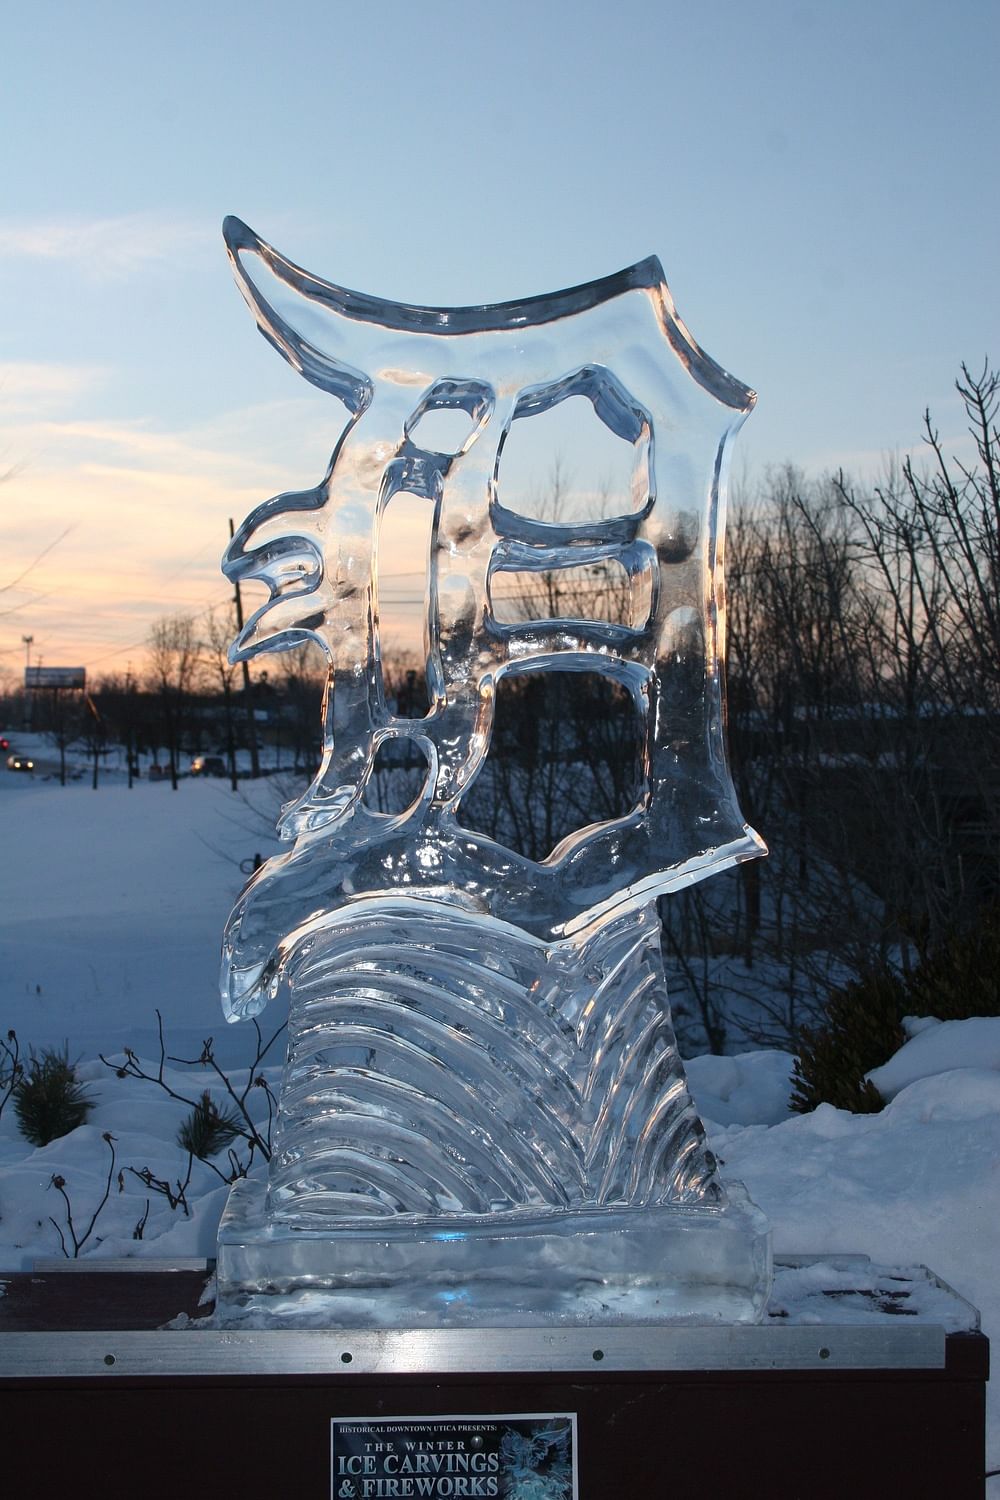 Stunning ice sculpture from a Detroit art festival